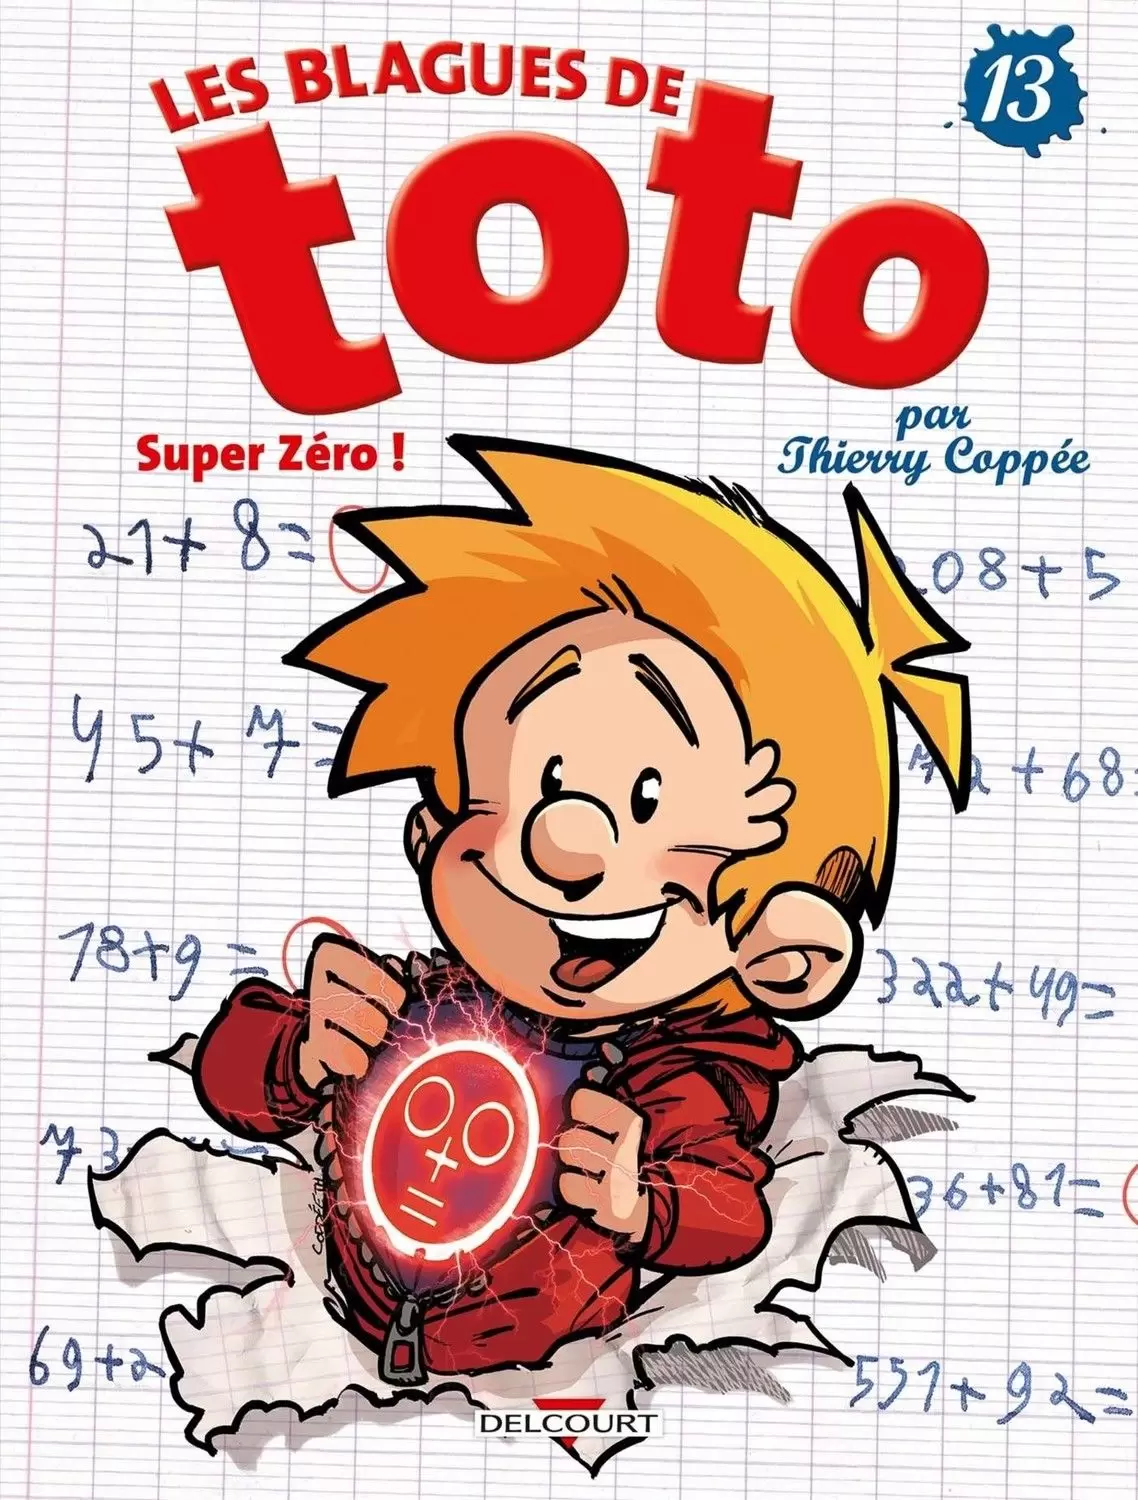 Les Blagues de Toto - Super Zéro